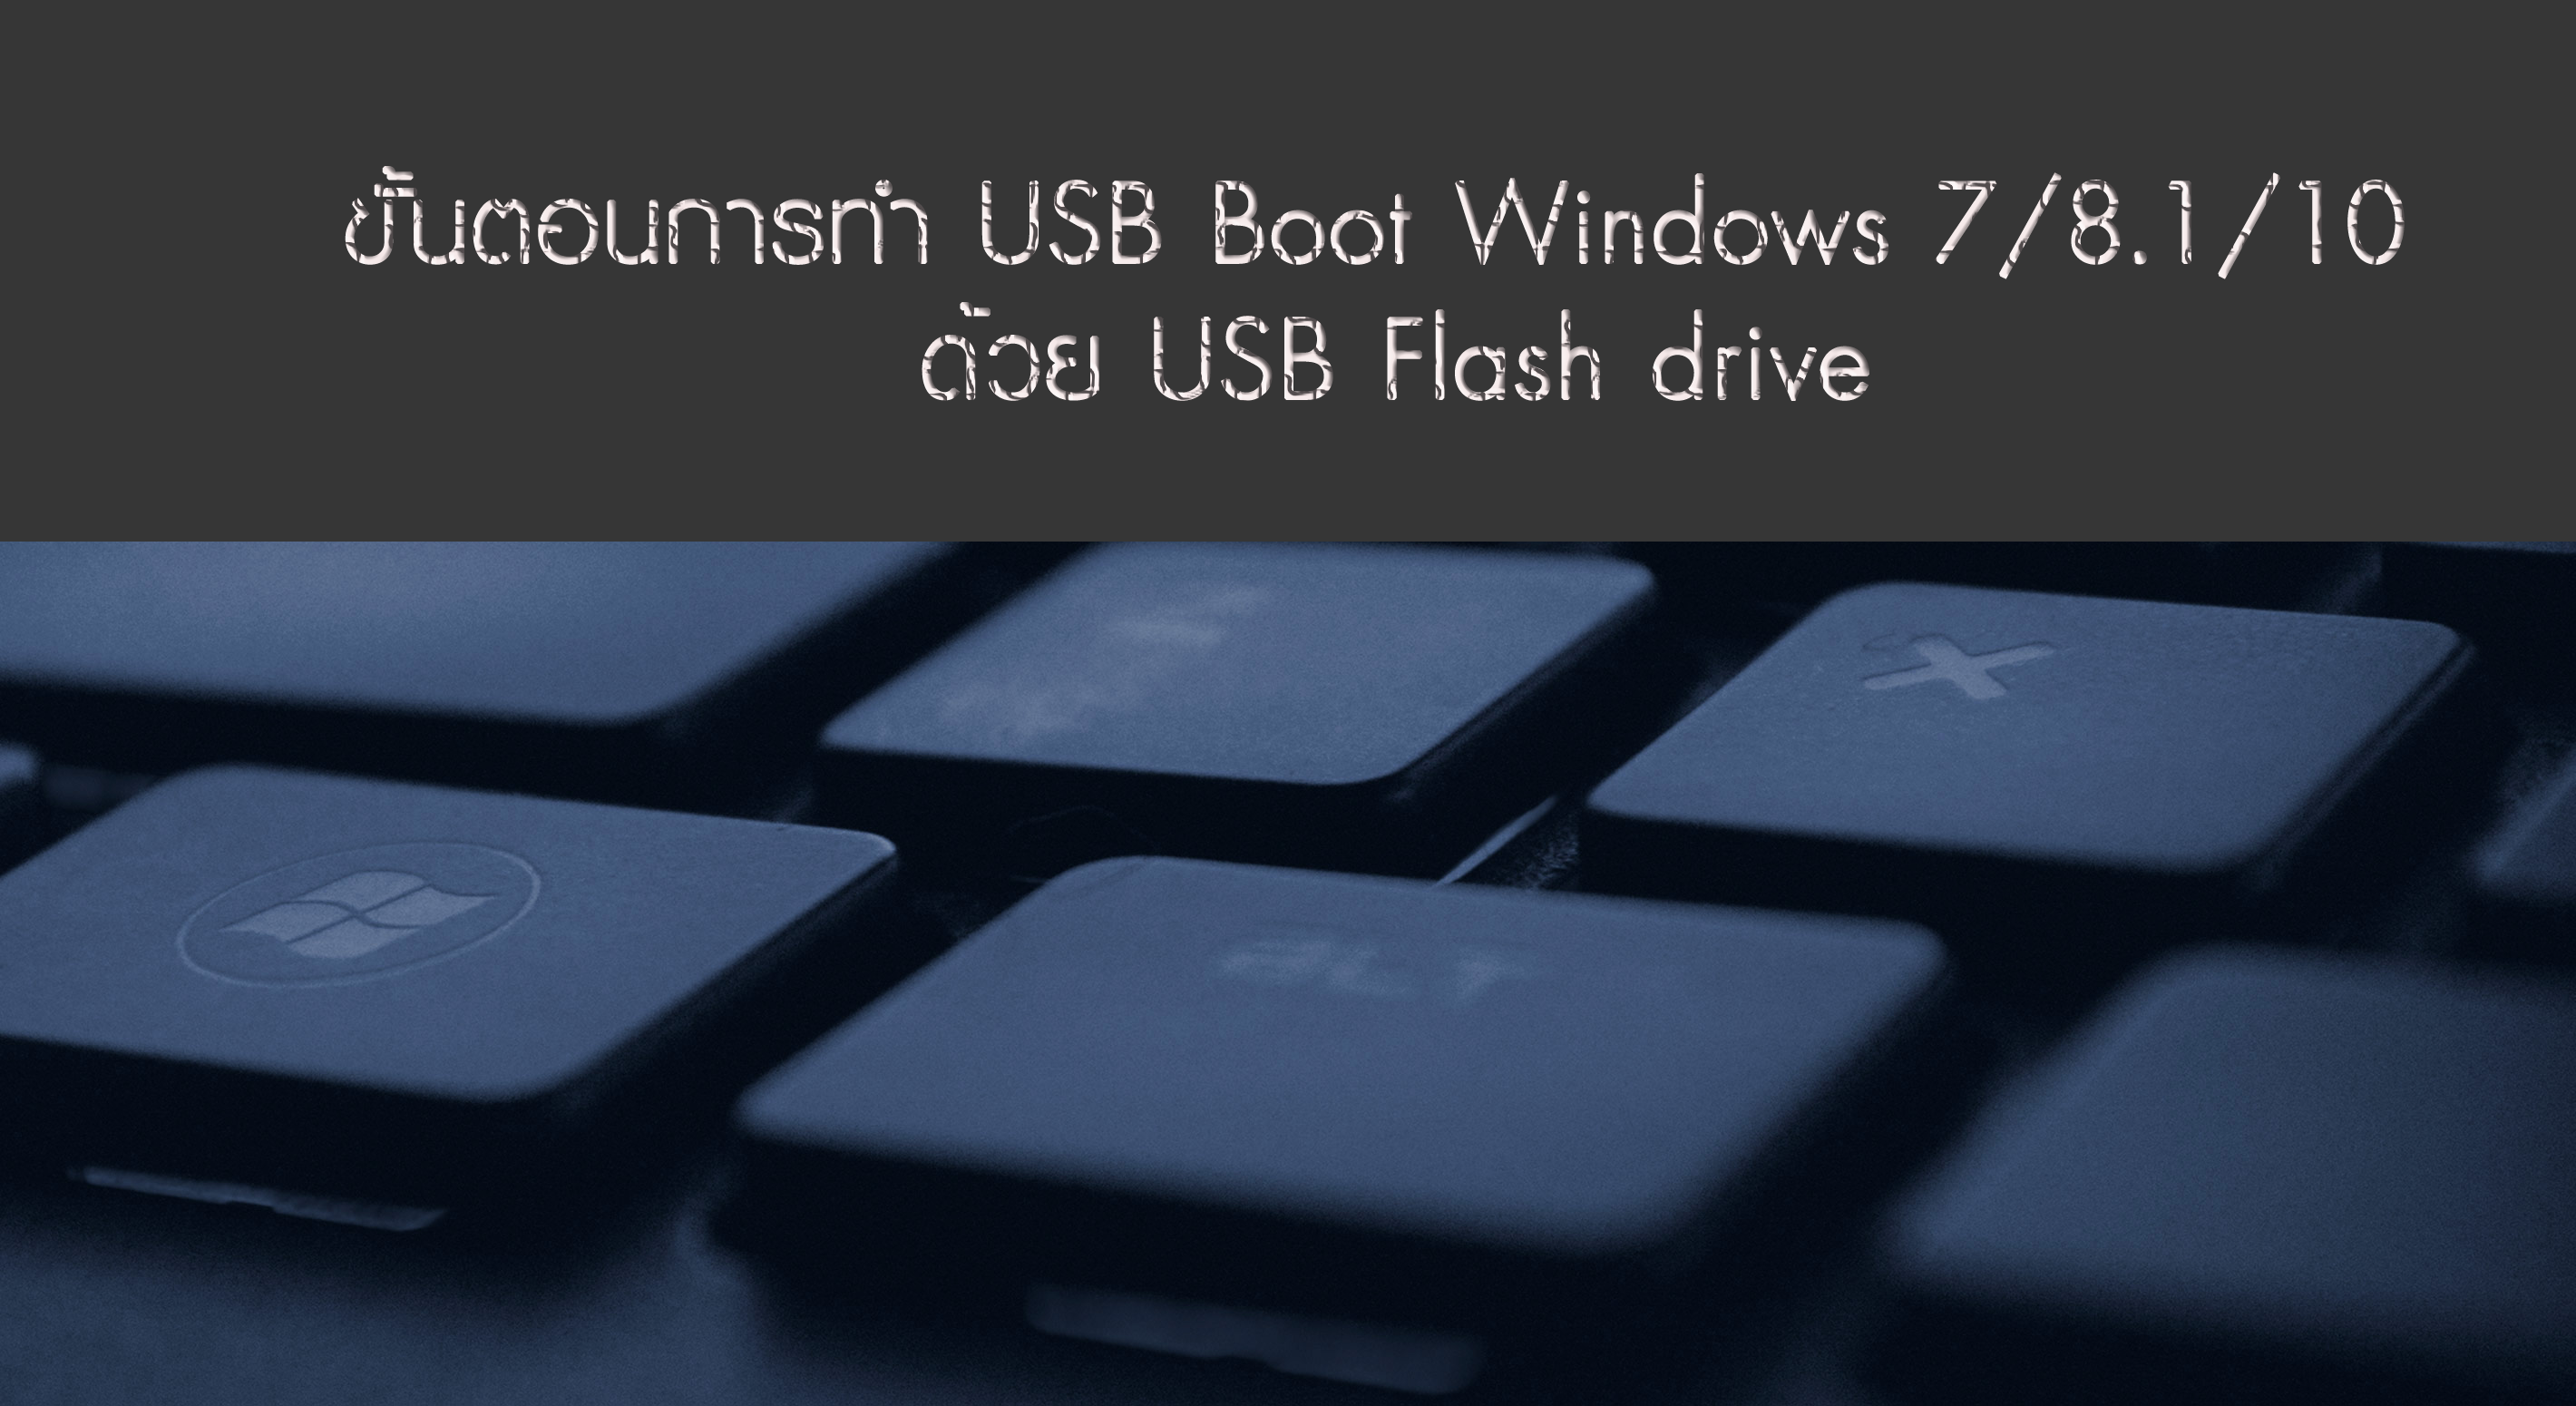 ขั้นตอนการทำ USB Boot Windows 7/8.1/10 ด้วย USB Flash drive